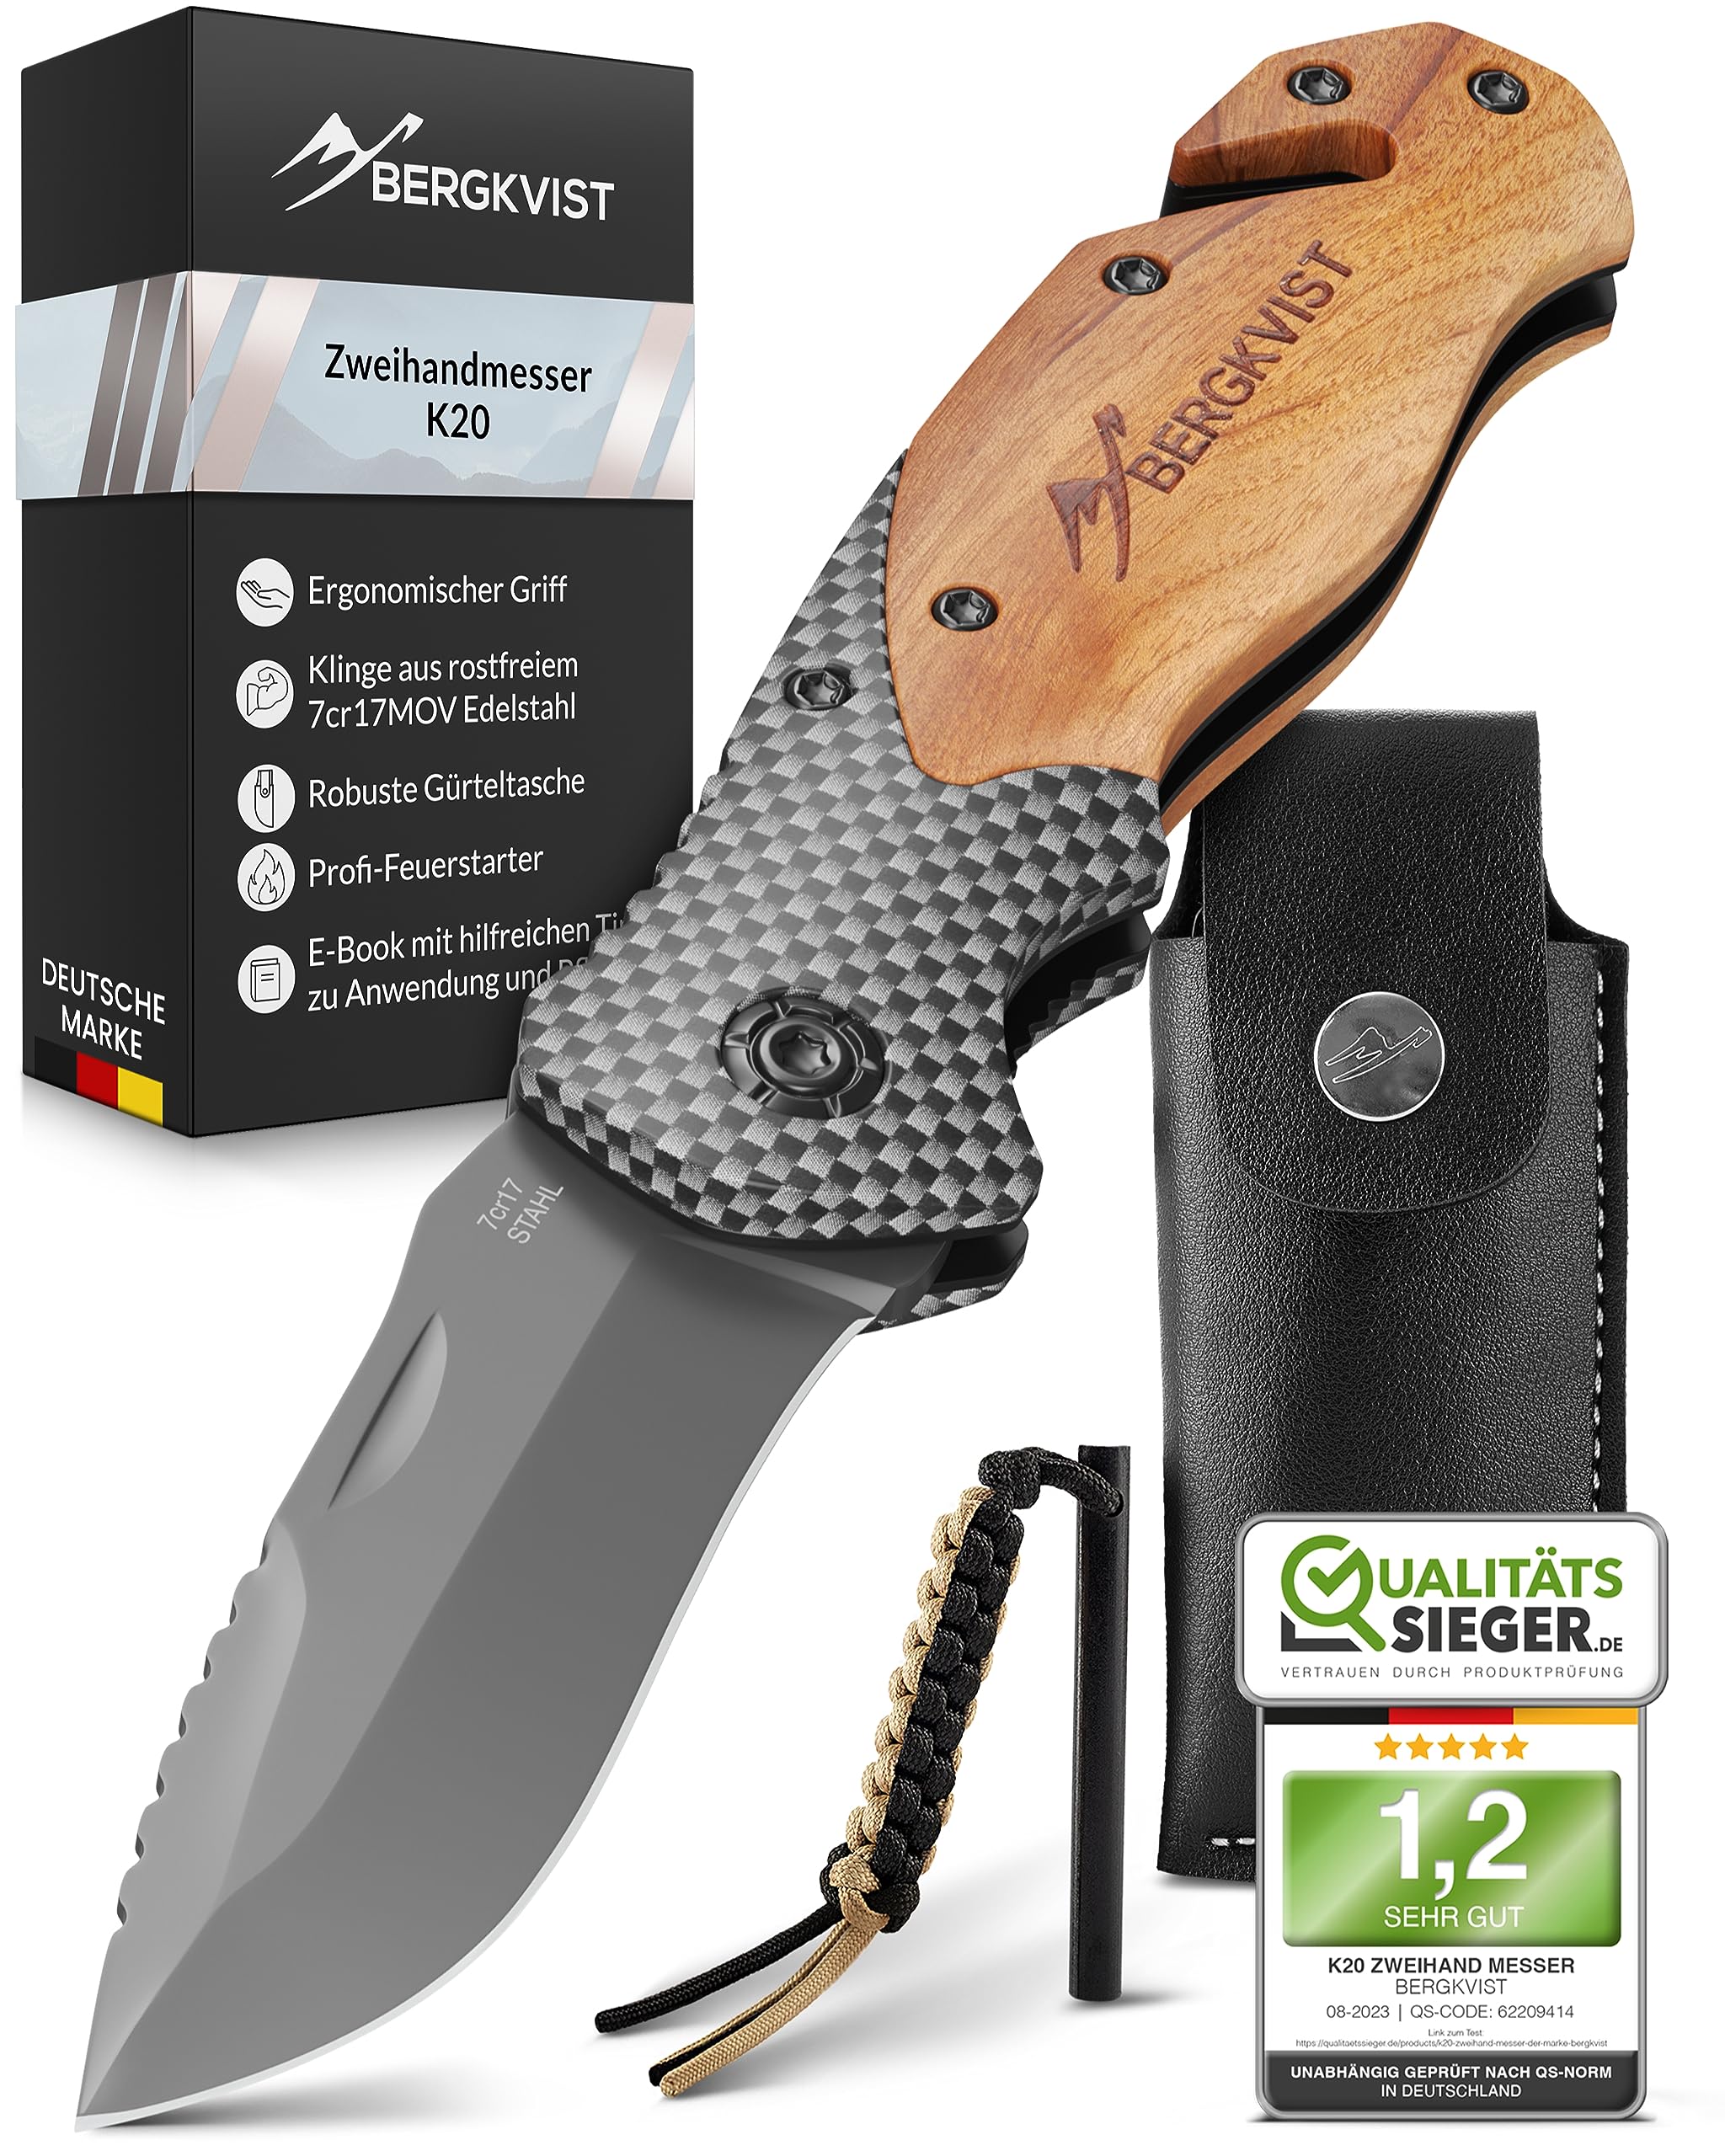 BERGKVIST® K20 Klappmesser (Zweihandmesser) mit Holzgriff & Titanium - Mitführen erlaubt - 3-in-1 Taschenmesser mit Glasbrecher, Gurtschneider & Feuerstahl